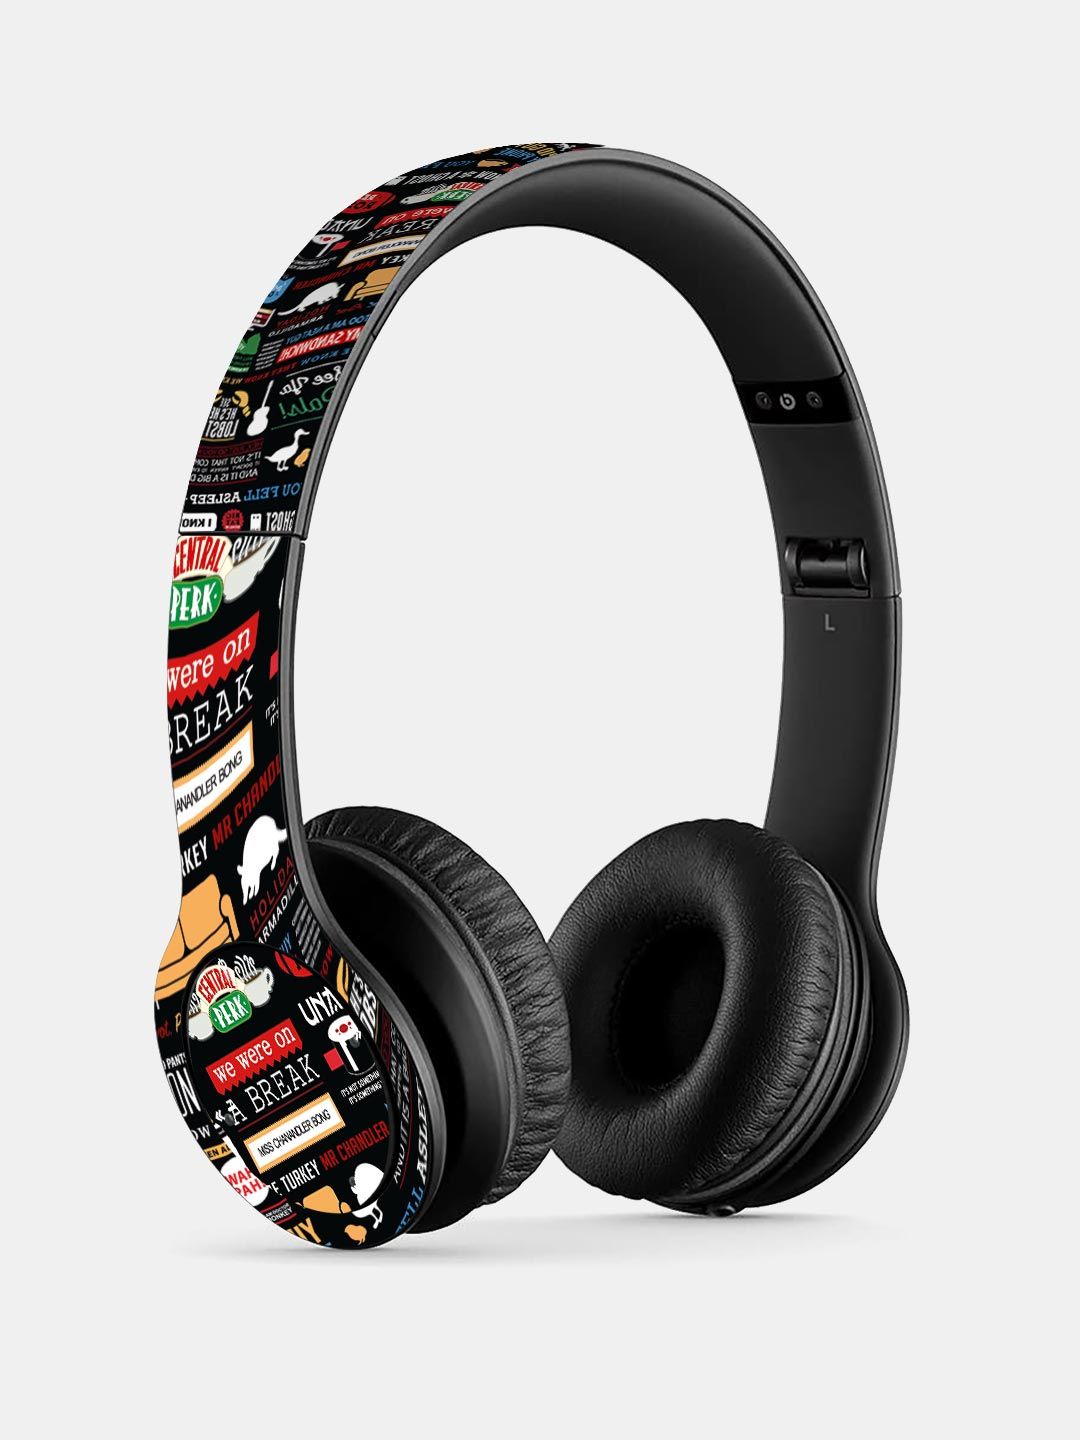 Buy Friends Infographic - P47 Wireless On Ear Headphones Headphones Online